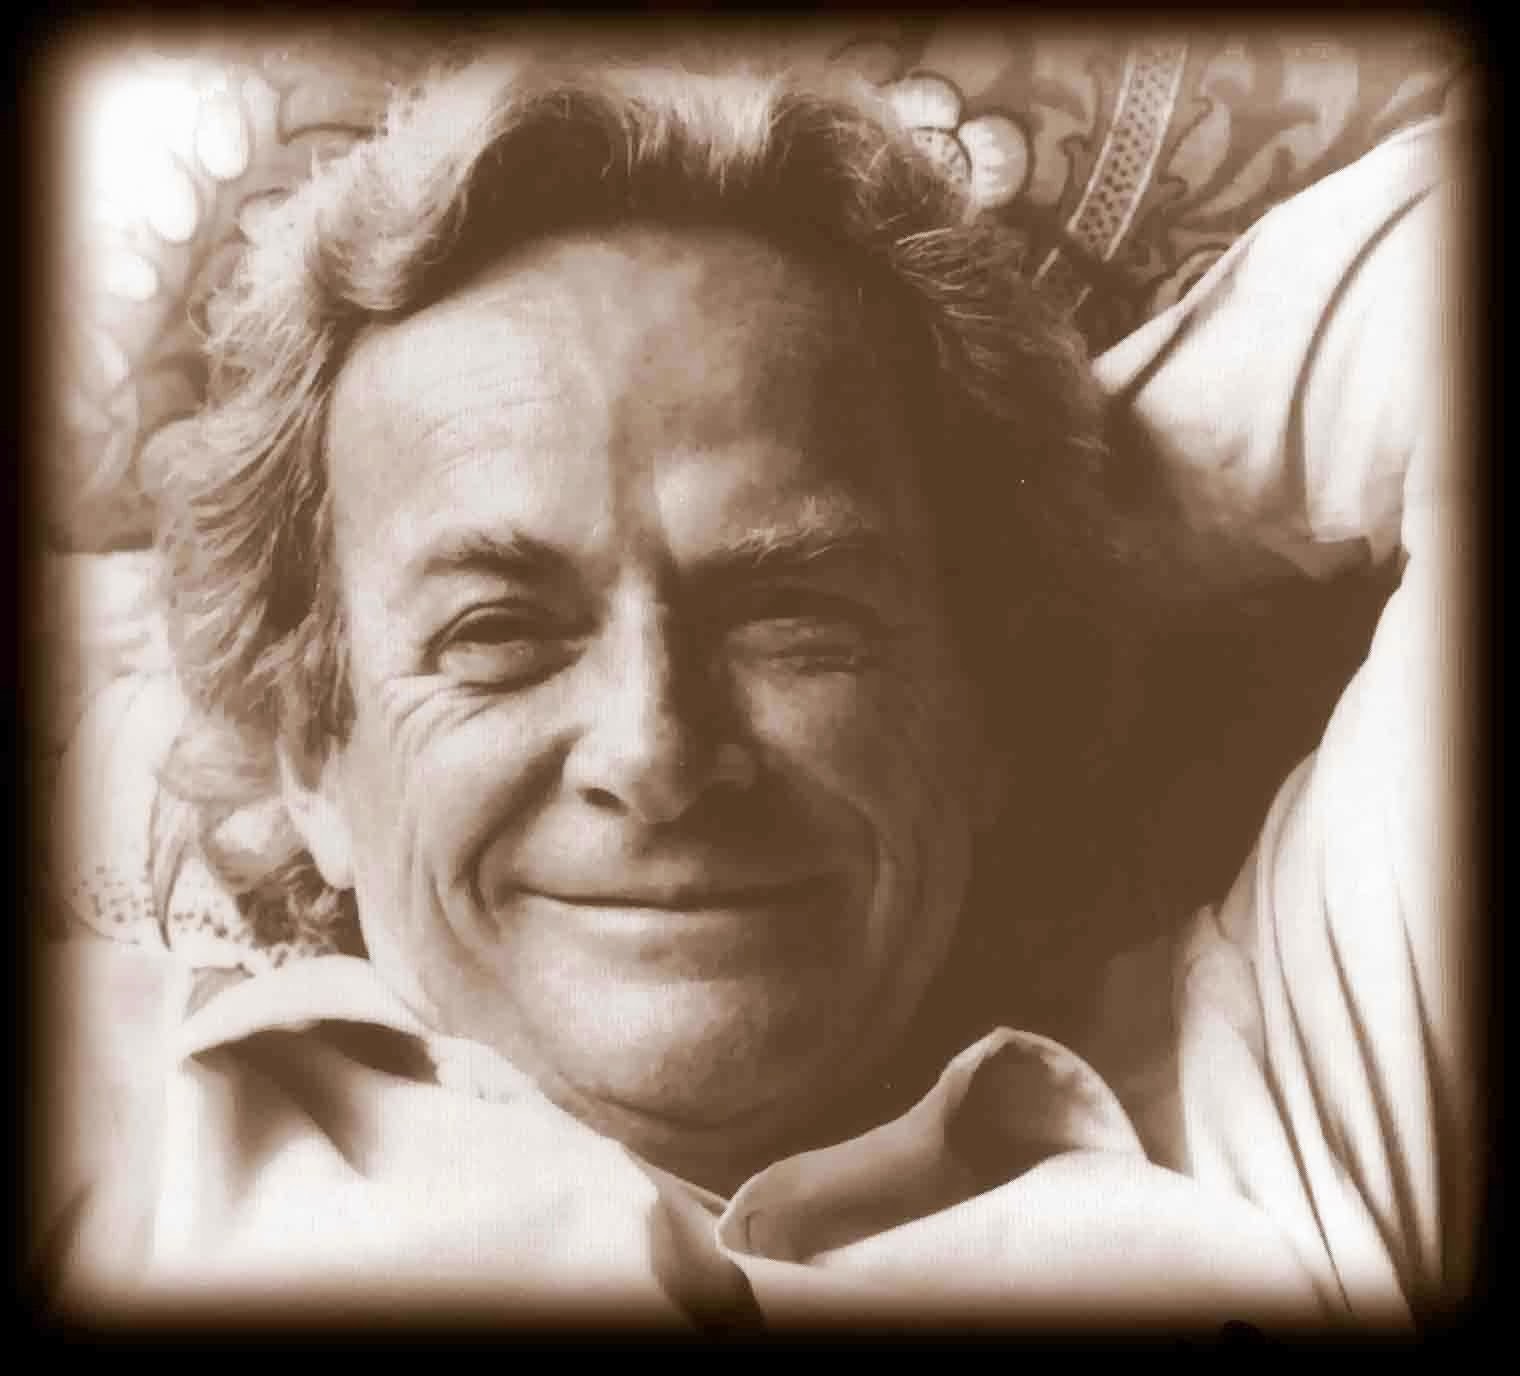 Richard feynman wrote a great essay on cargo cult science